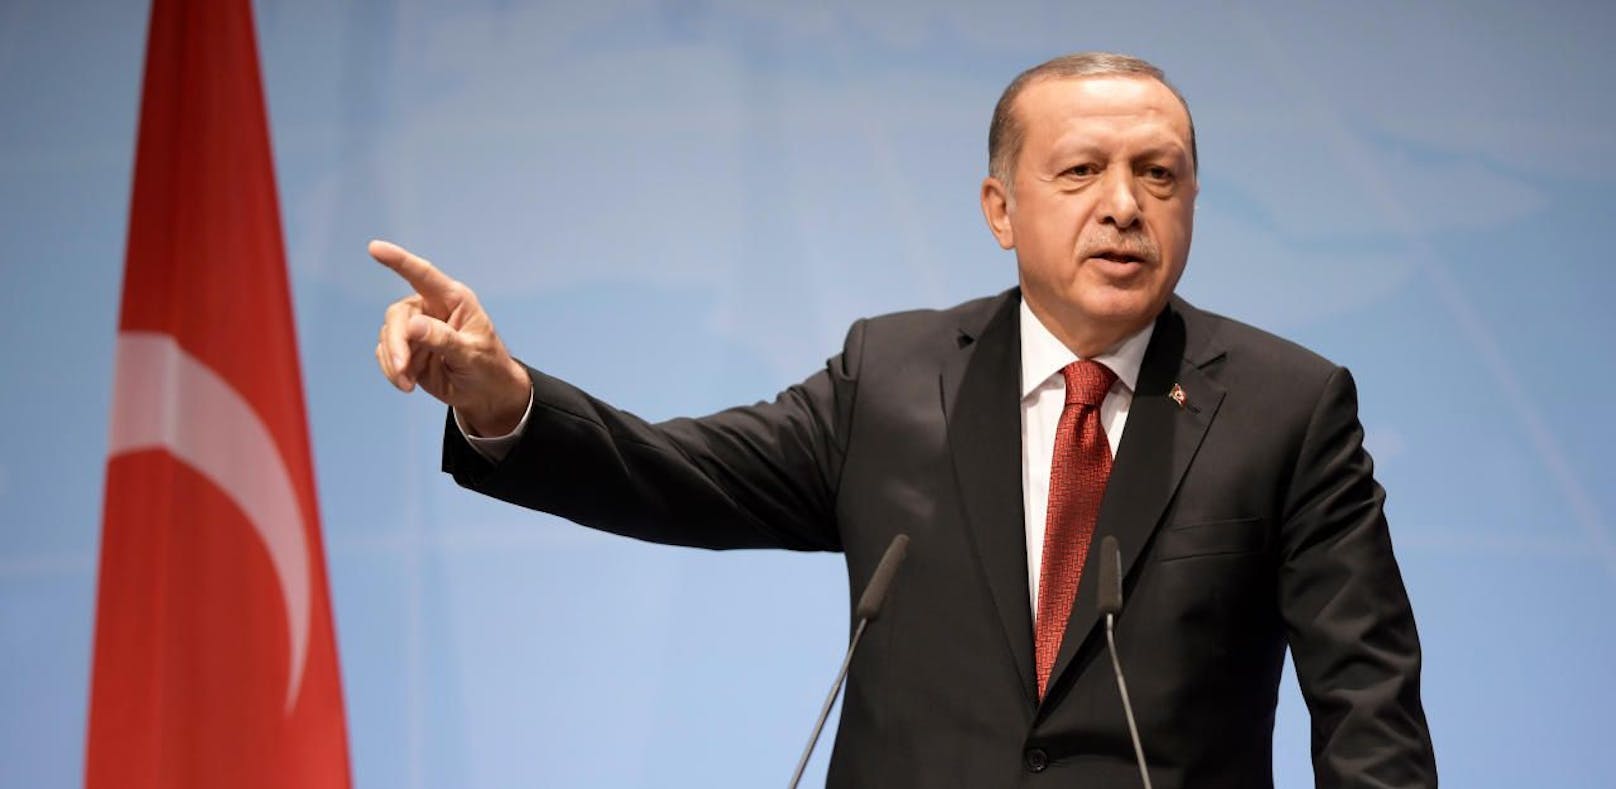 Recep Tayyip Erdogan ließ den deutschen Schriftsteller verhaften.